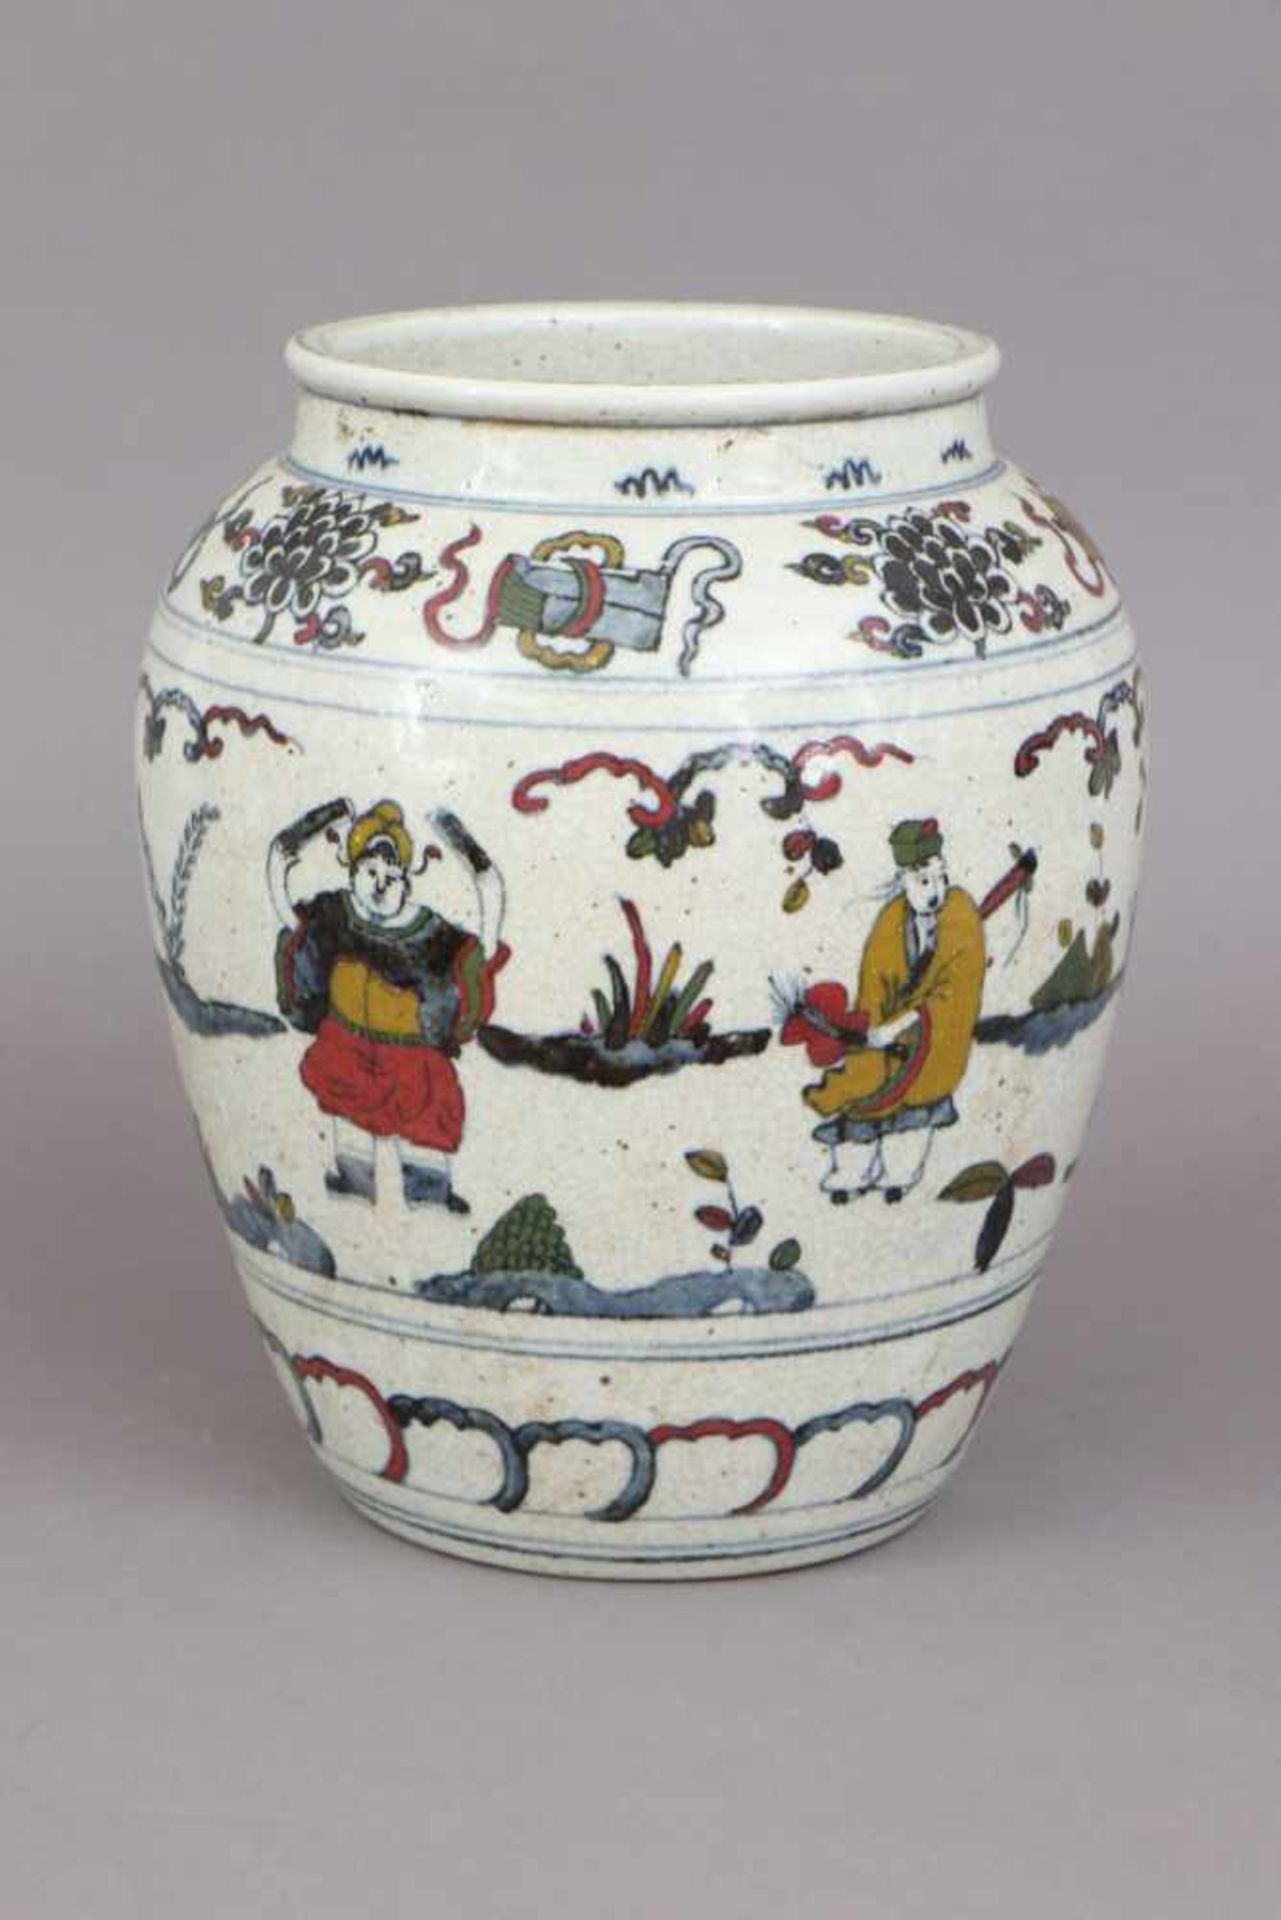 Chinesisches Porzellan-Vasengefäßhell glasiert und craqueliert, Alter unbestimmt, hochbauchiger - Bild 2 aus 3